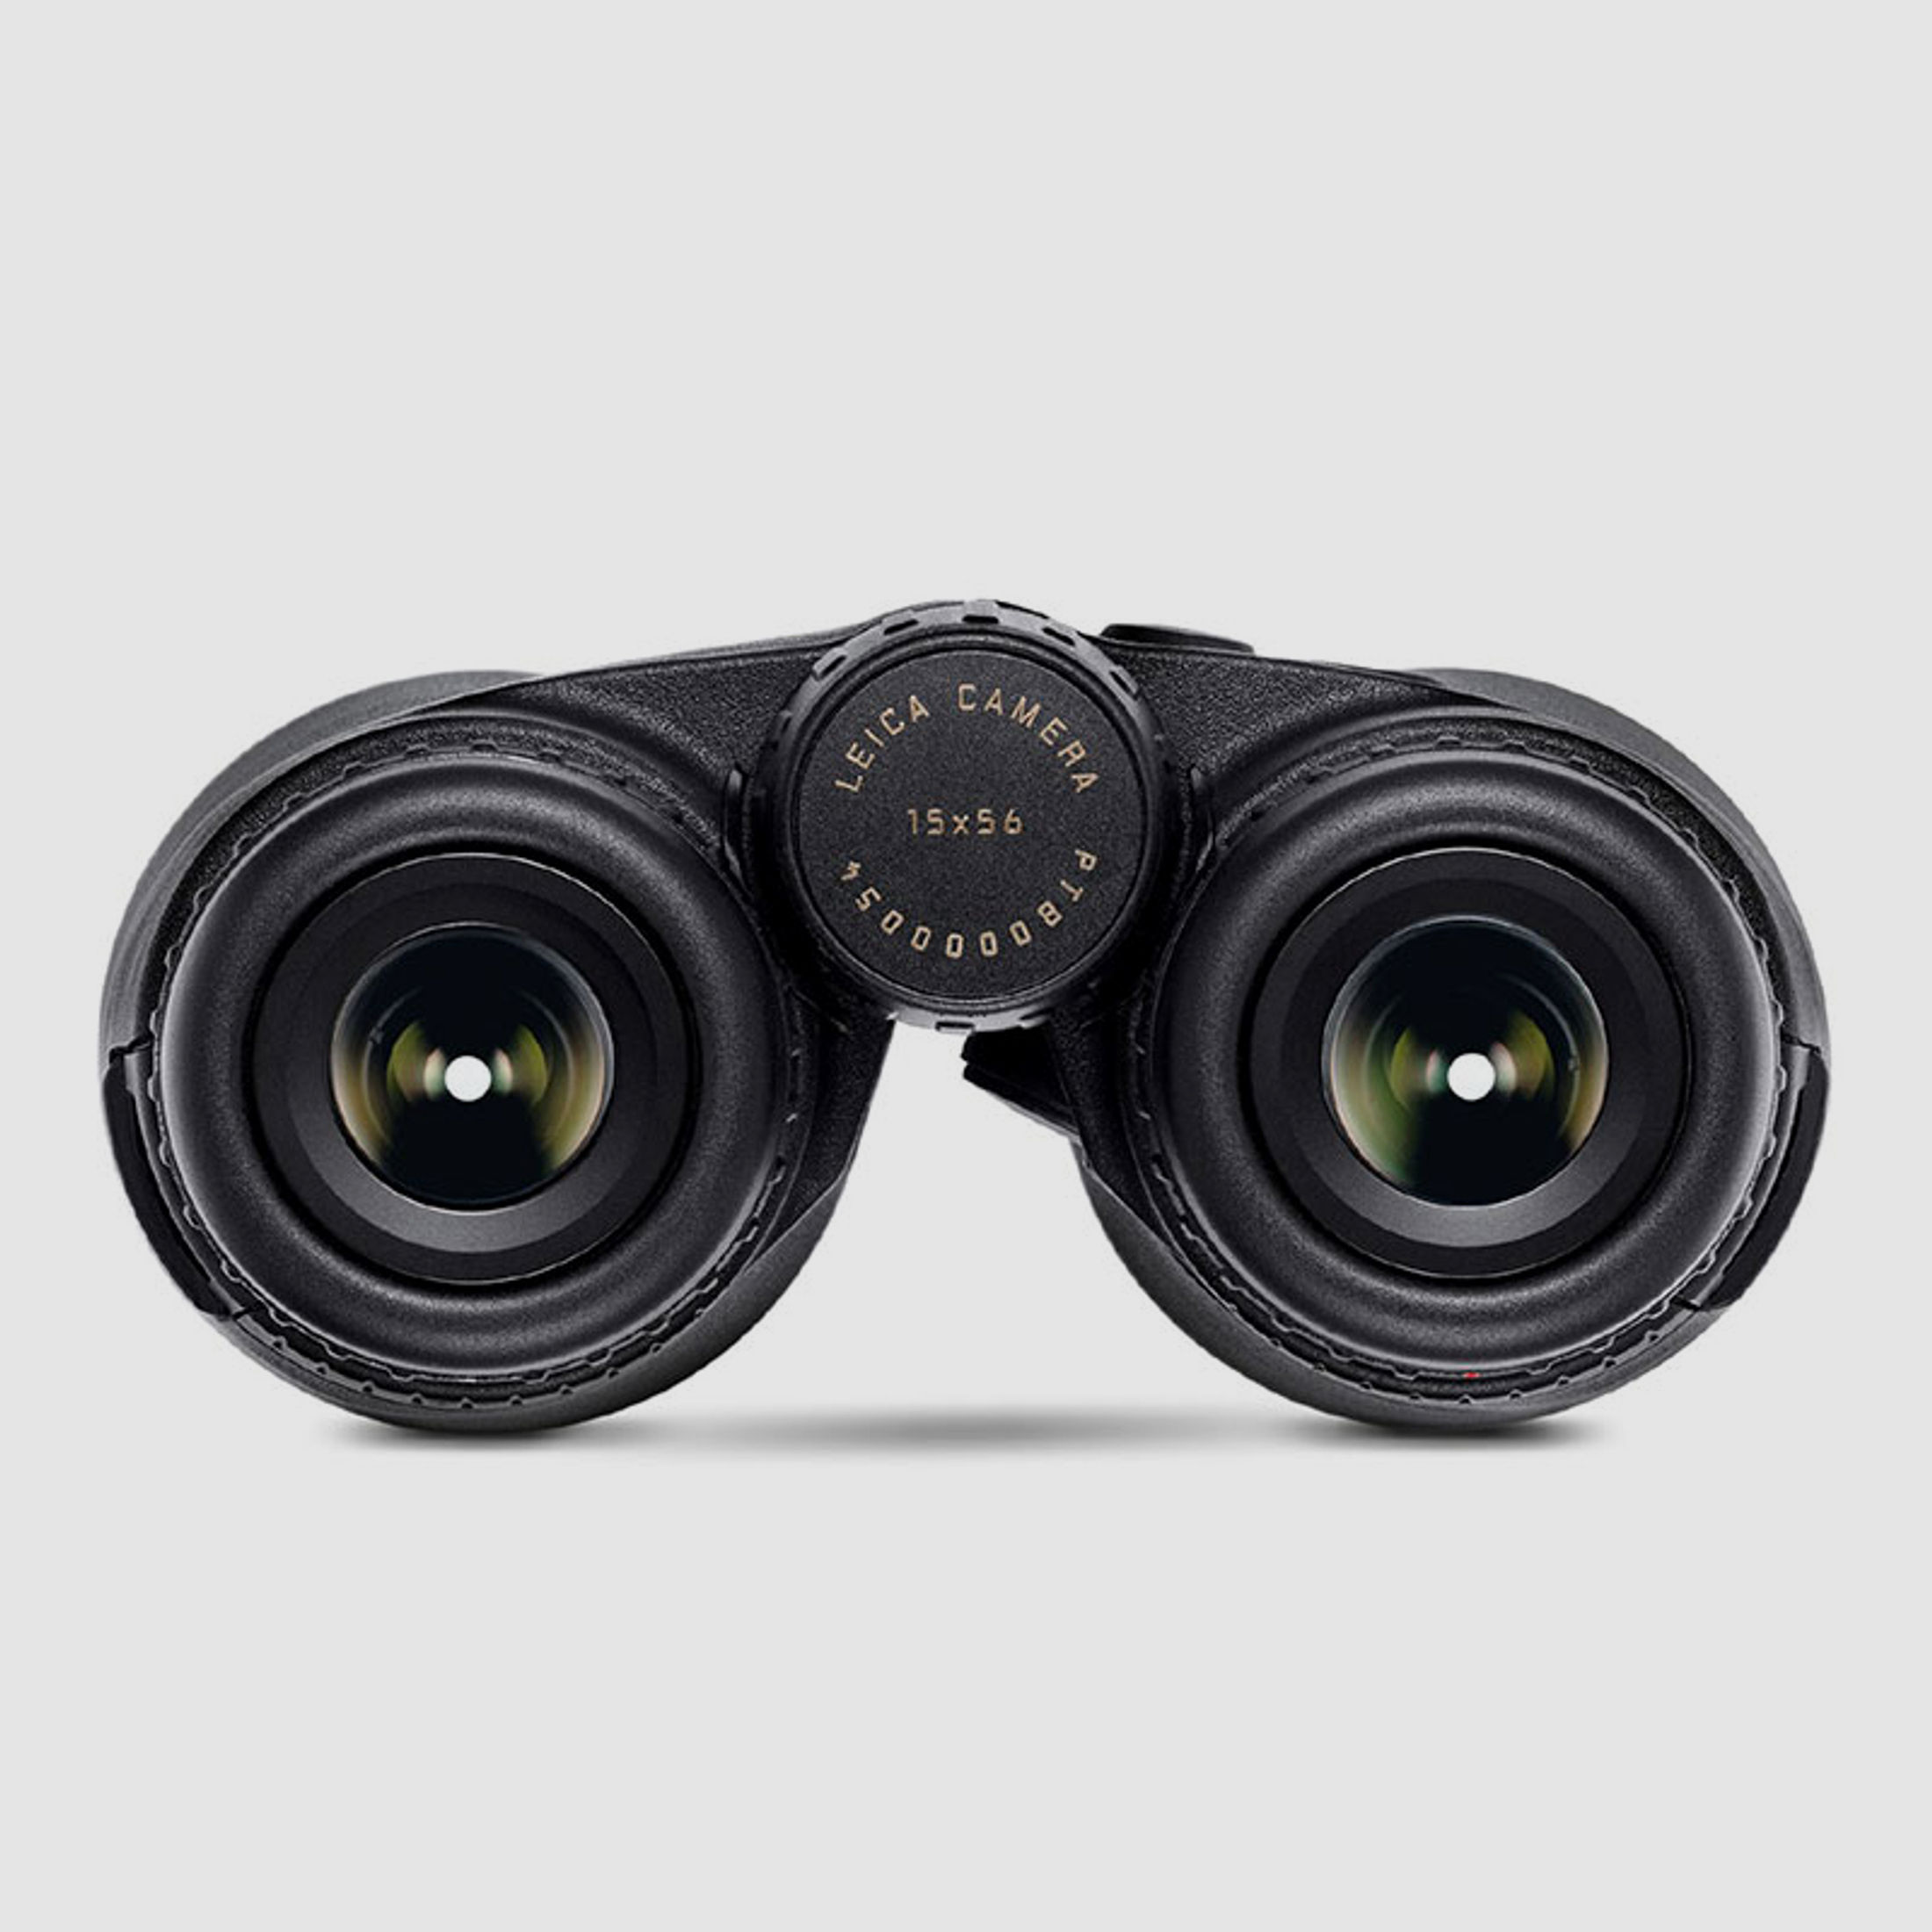 Leica Fernglas Geovid R 15x56